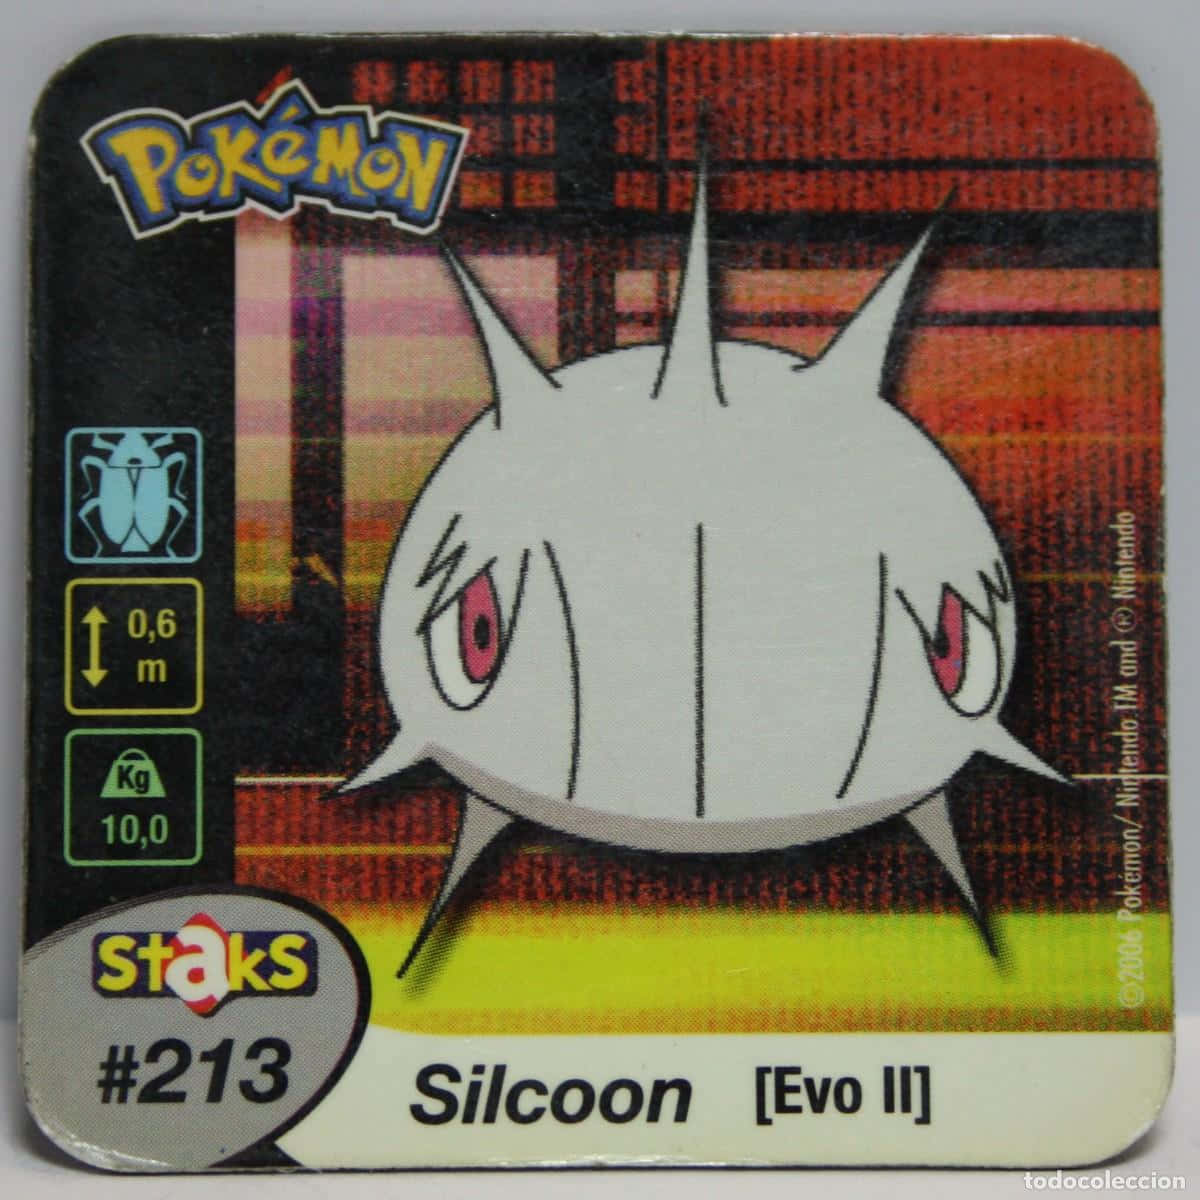 Silcoonist Ein Pokémon, Das Sich Zu Staks Entwickelt. Wallpaper